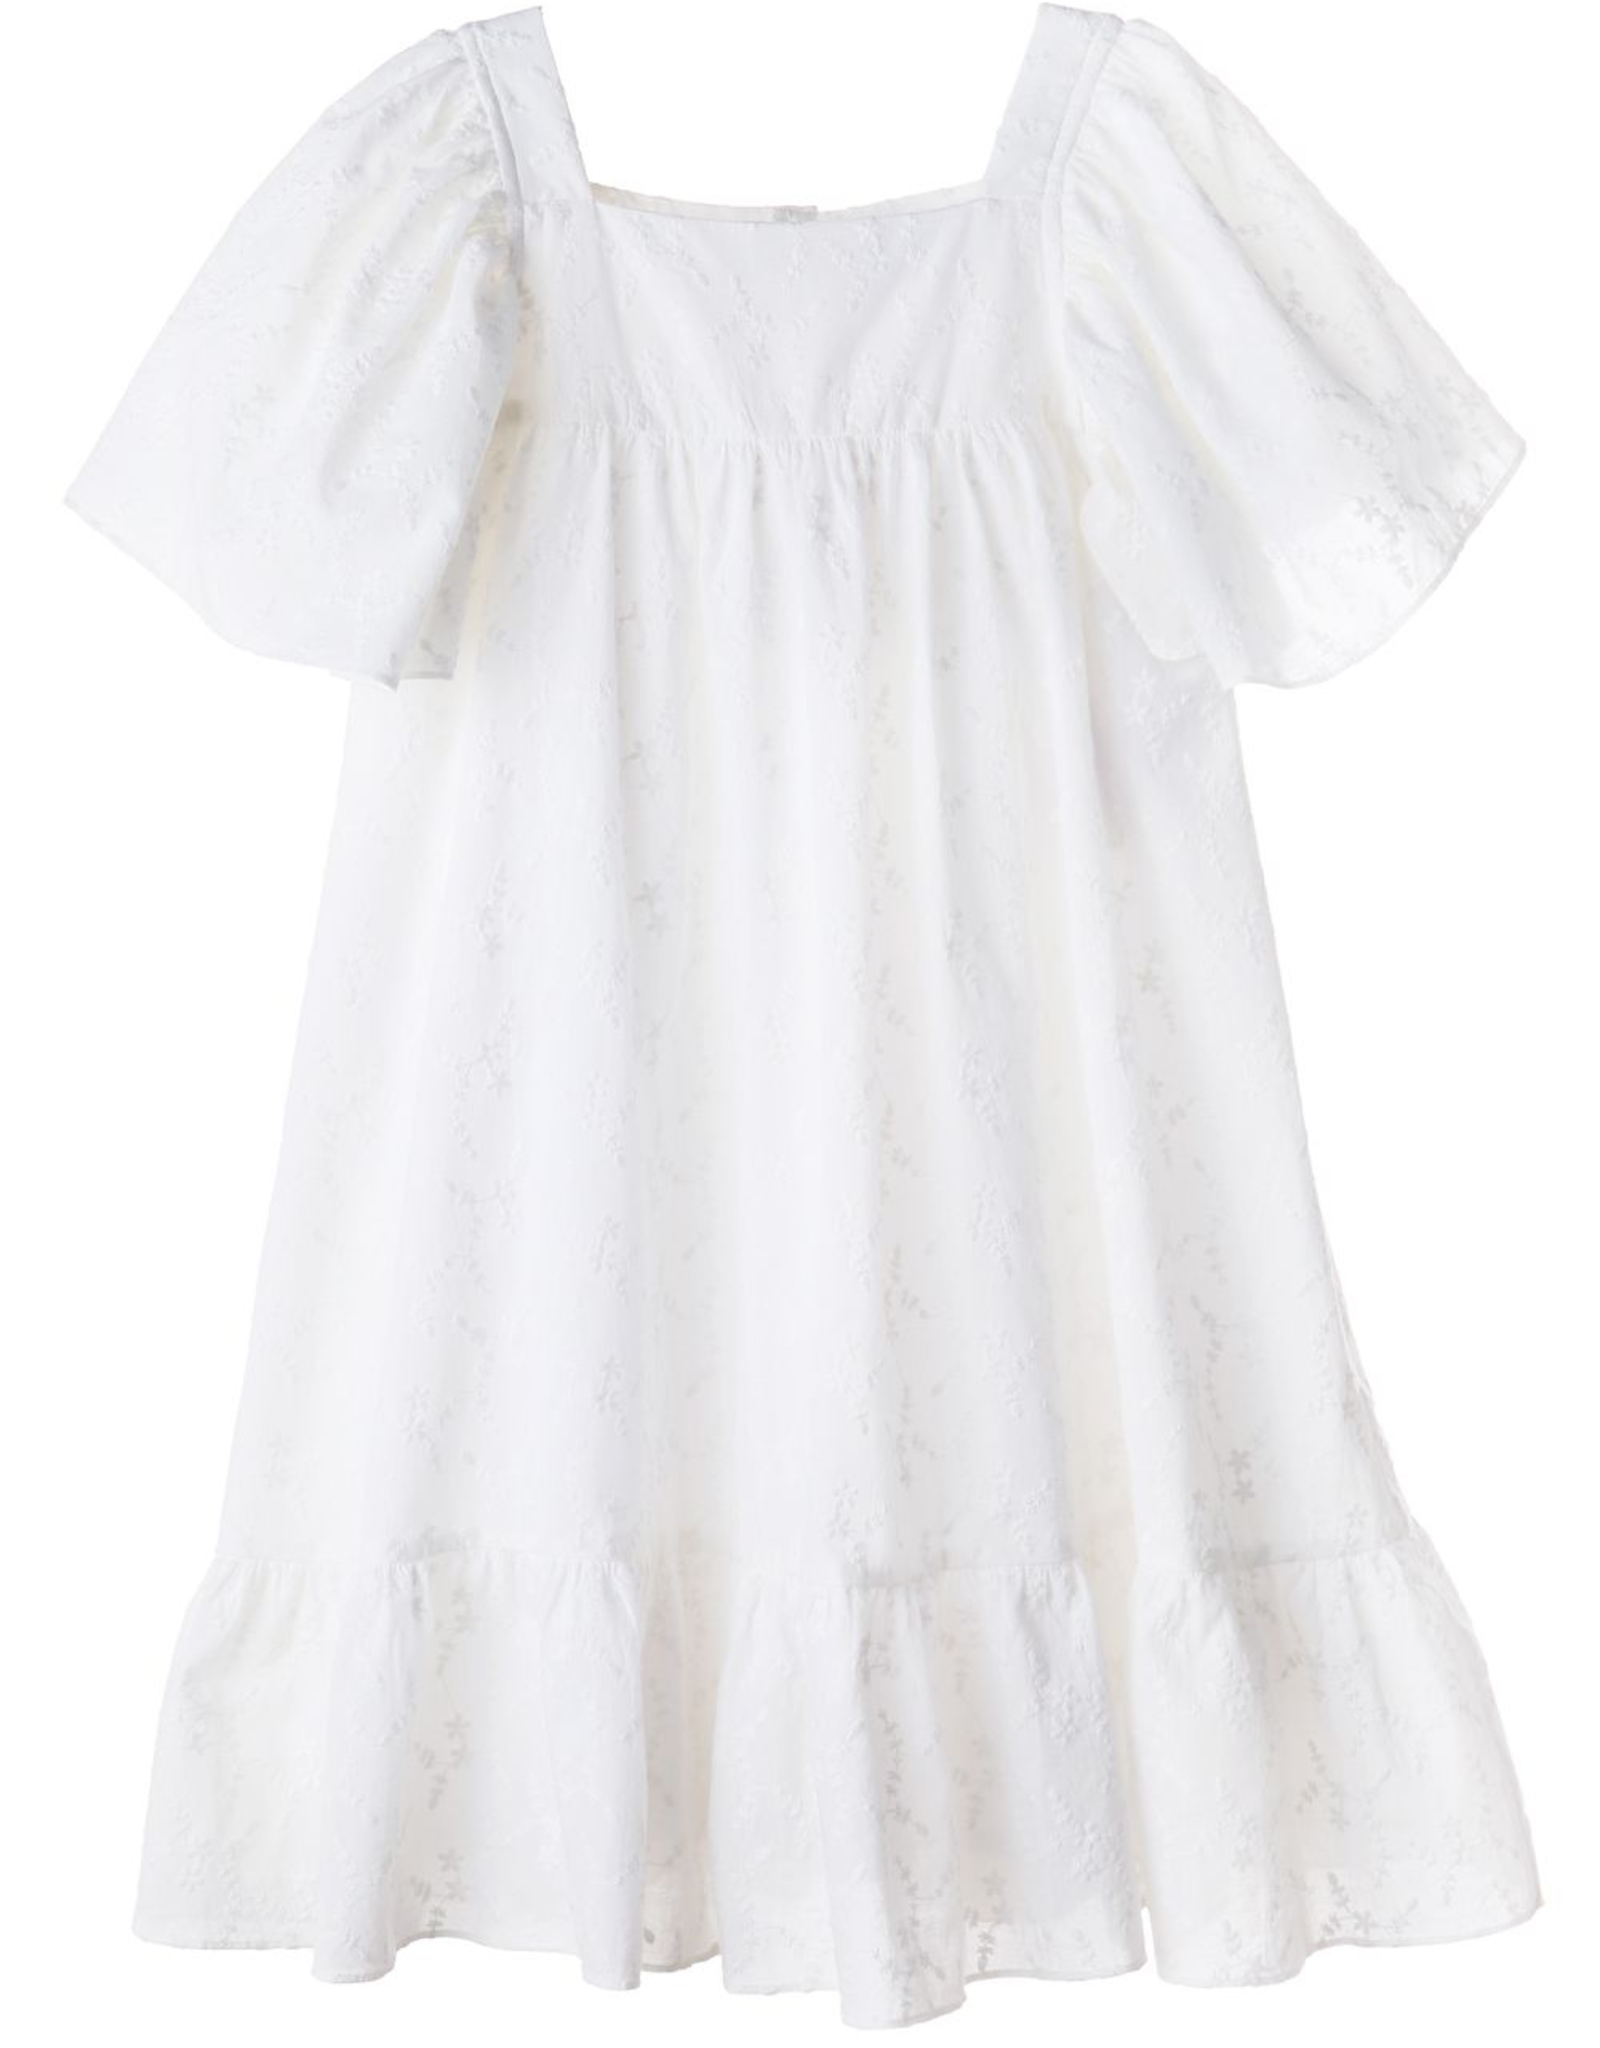 Taylor Twirl Dress White